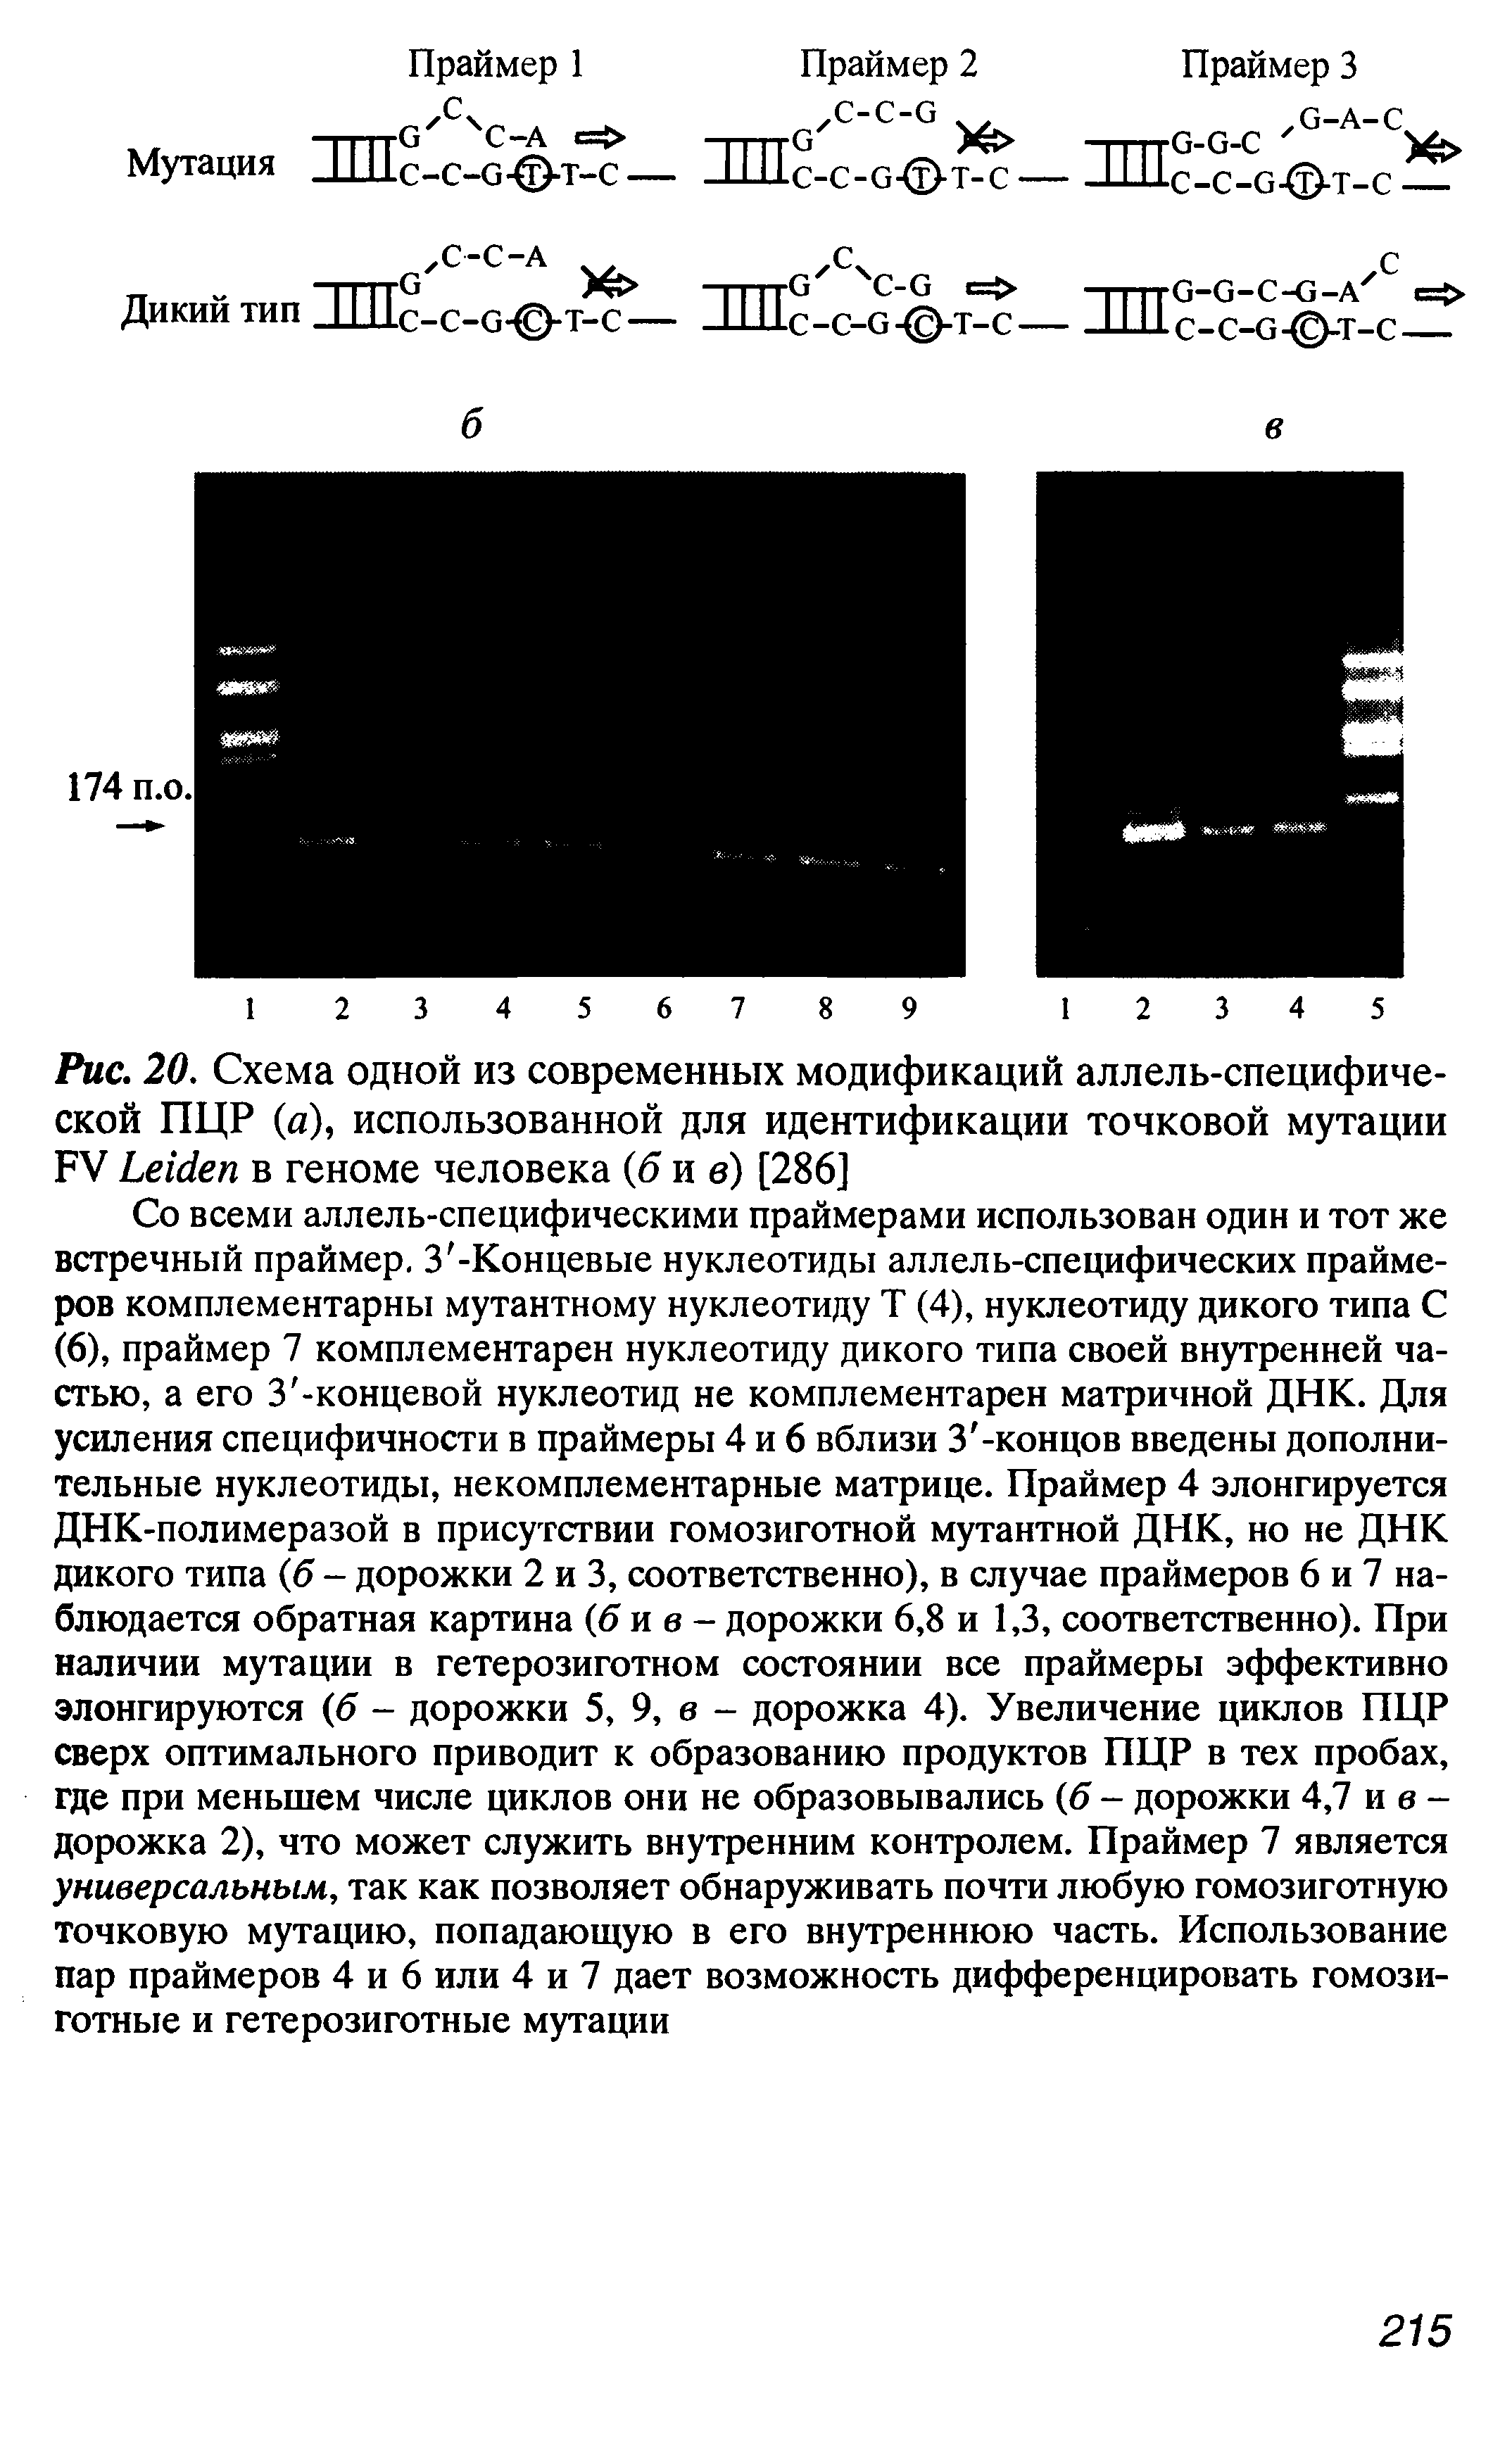 Рис. 20. Схема одной из современных модификаций аллель-специфиче-ской ПЦР (а), использованной для идентификации точковой мутации FV L в геноме человека (б и в) [286]...